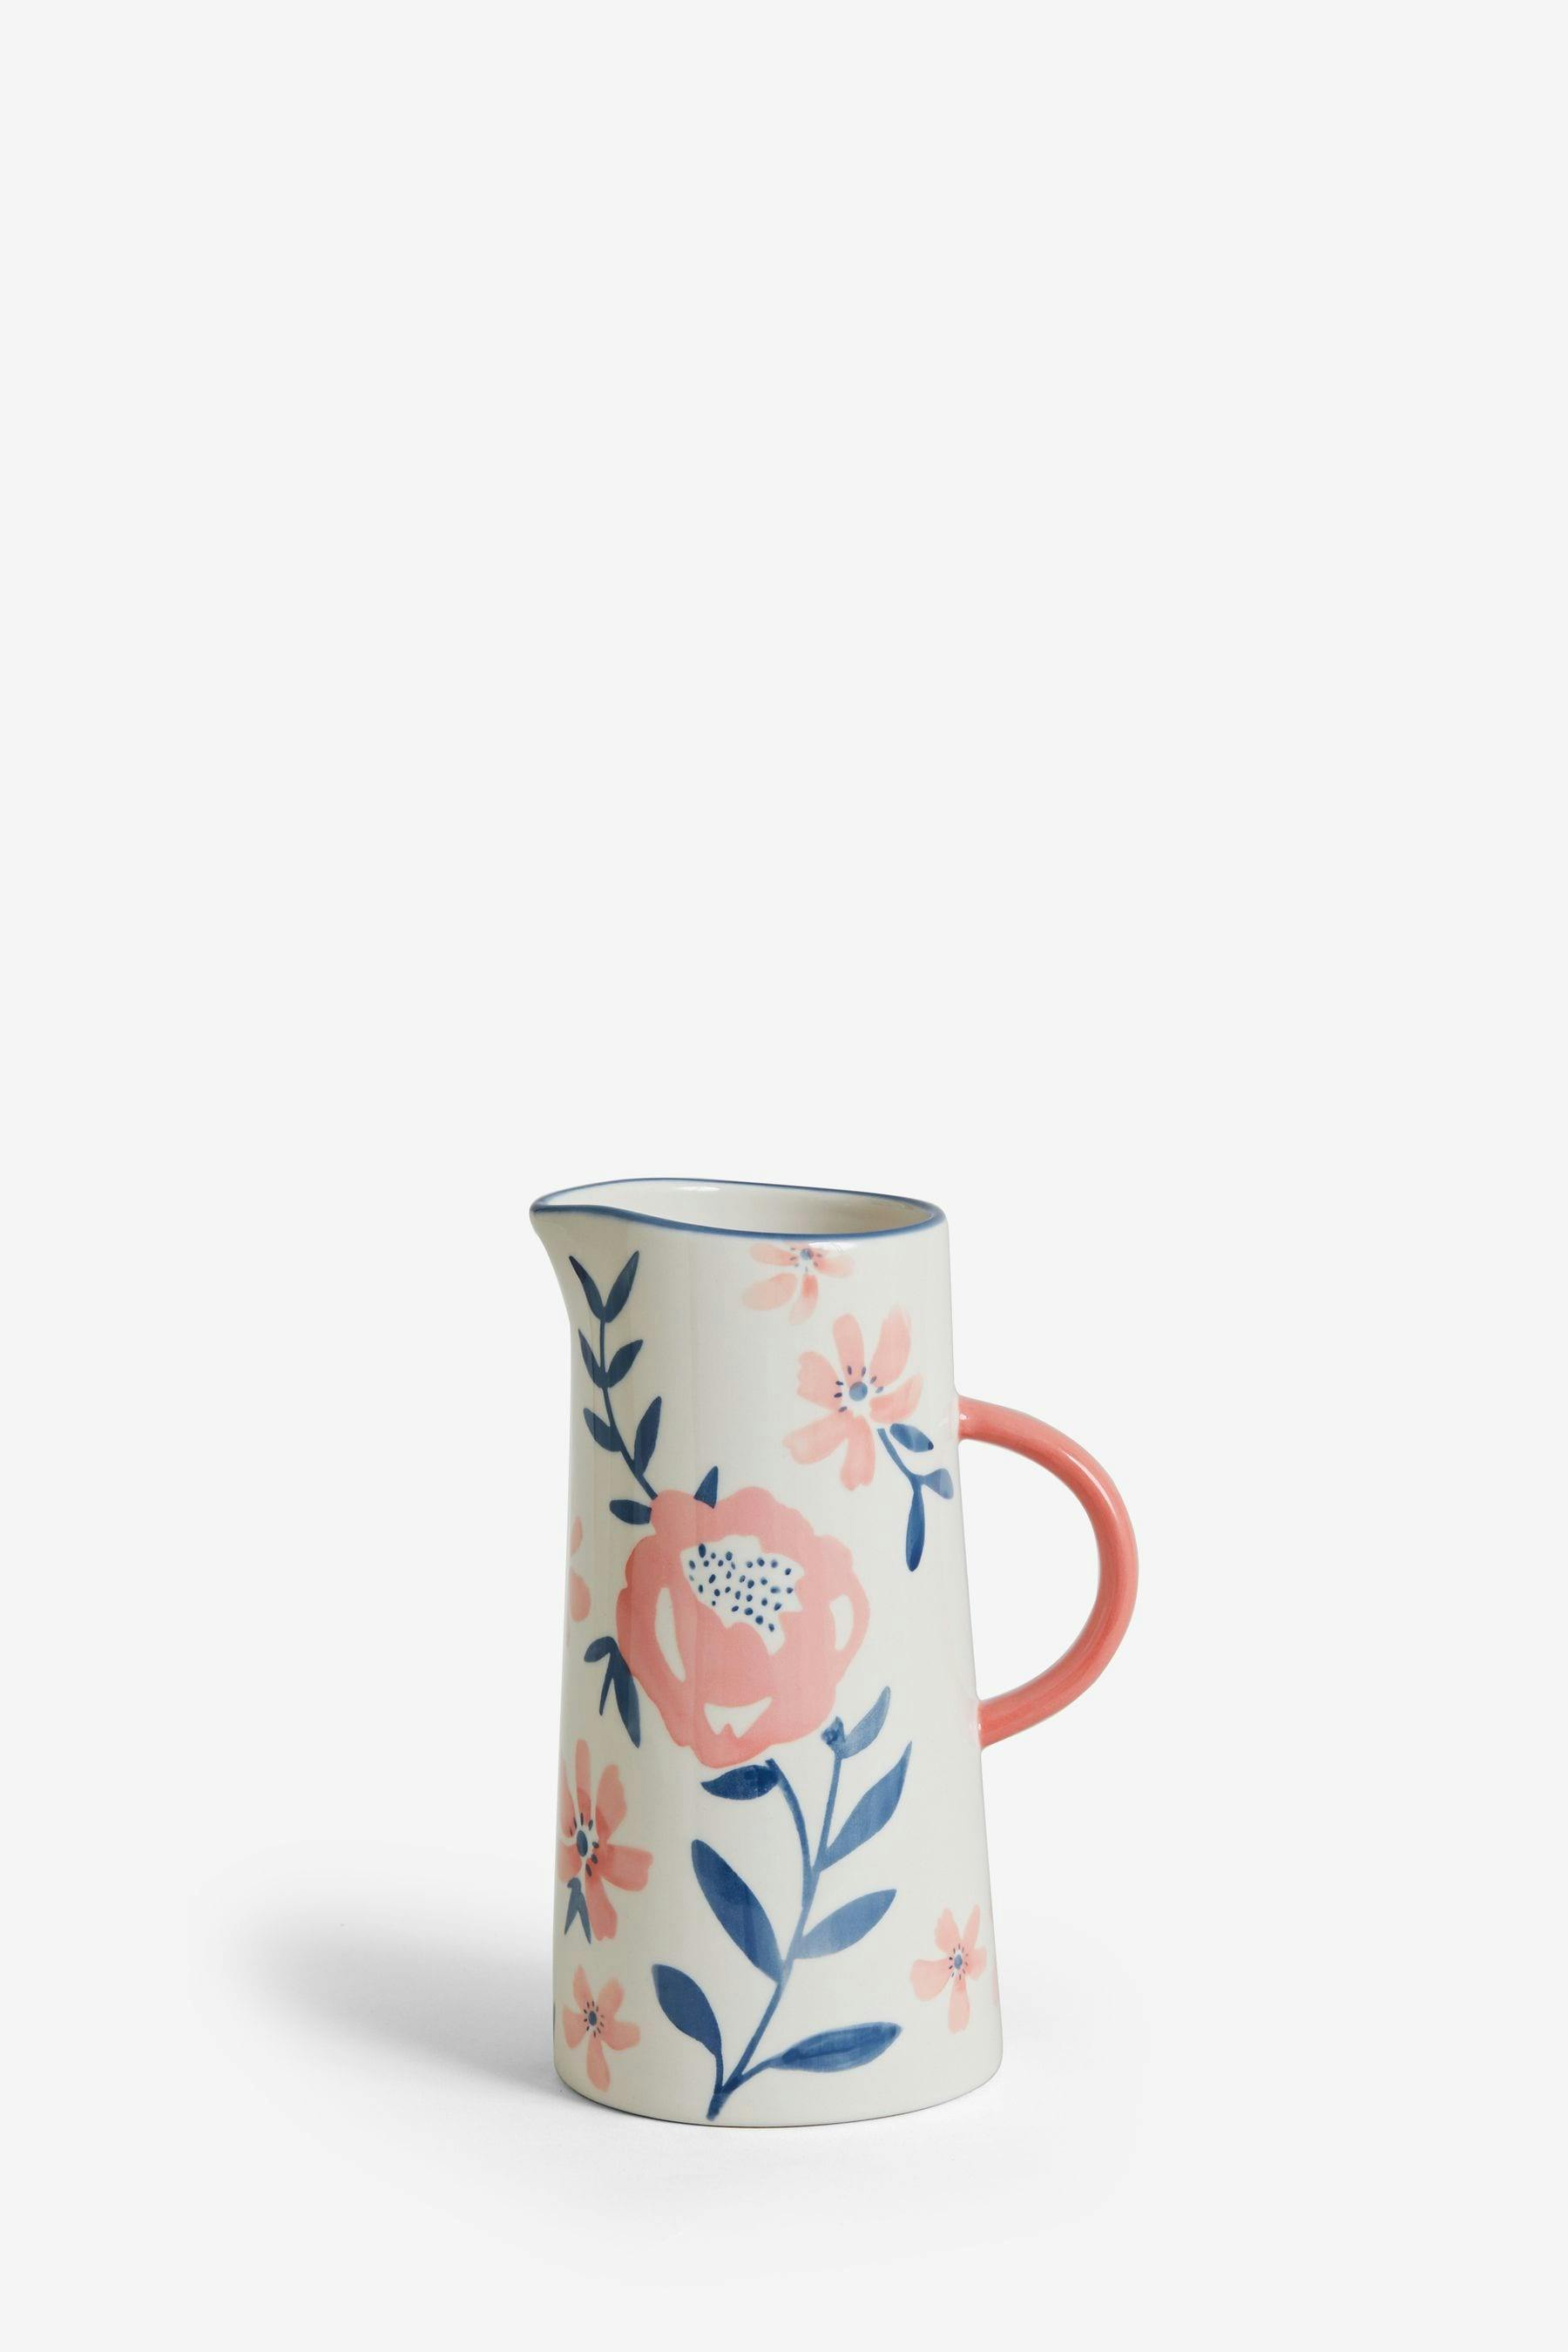 Floral ceramic jug vase